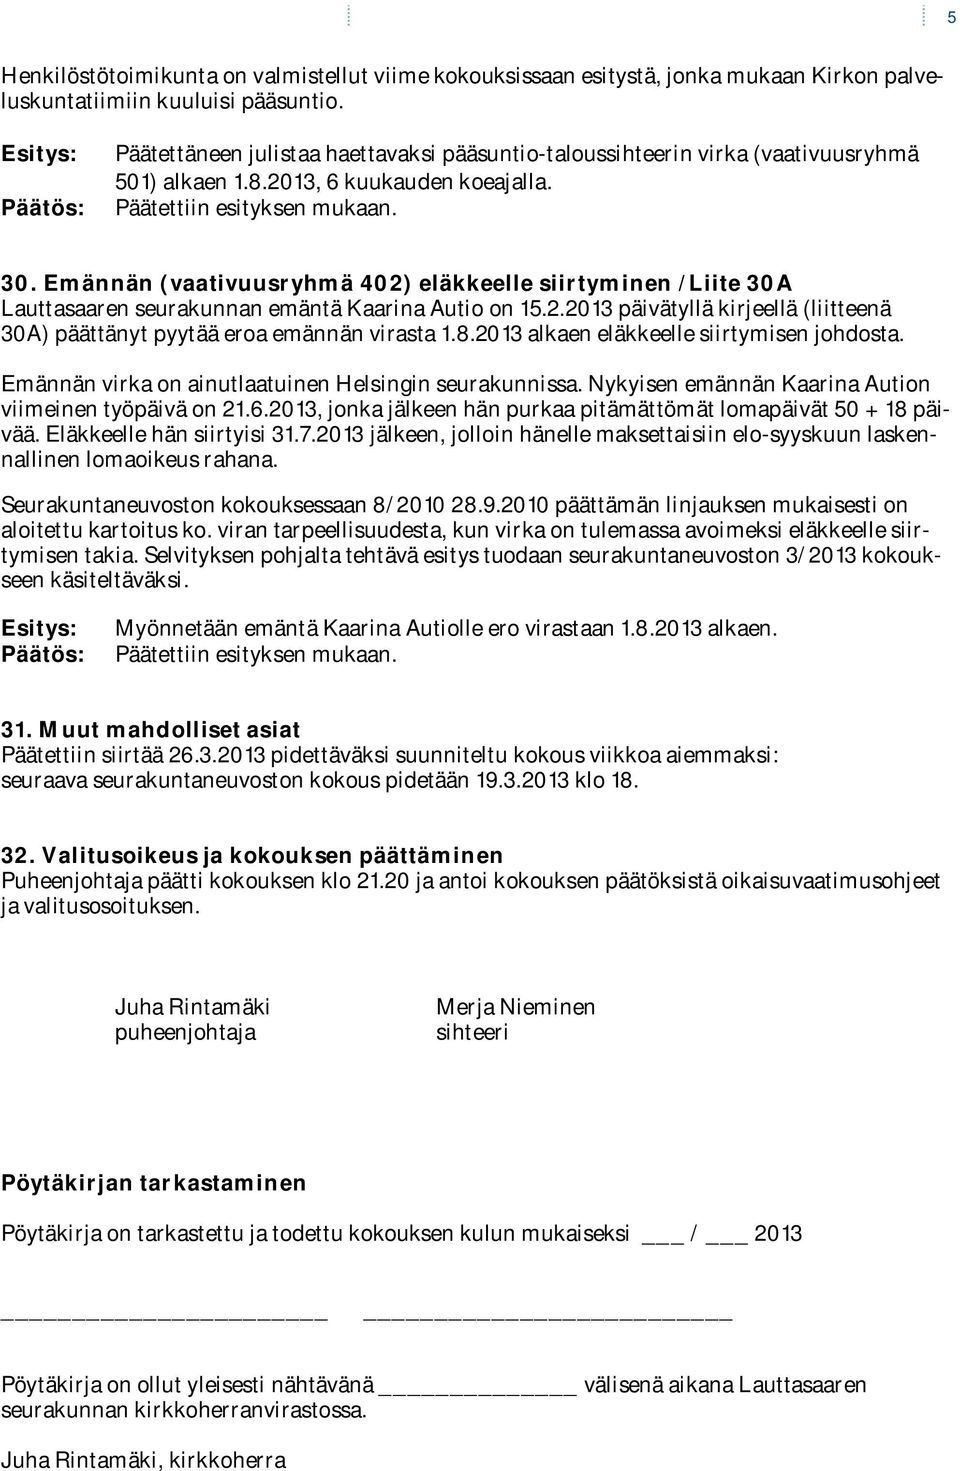 Emännän (vaativuusryhmä 402) eläkkeelle siirtyminen /Liite 30A Lauttasaaren seurakunnan emäntä Kaarina Autio on 15.2.2013 päivätyllä kirjeellä (liitteenä 30A) päättänyt pyytää eroa emännän virasta 1.